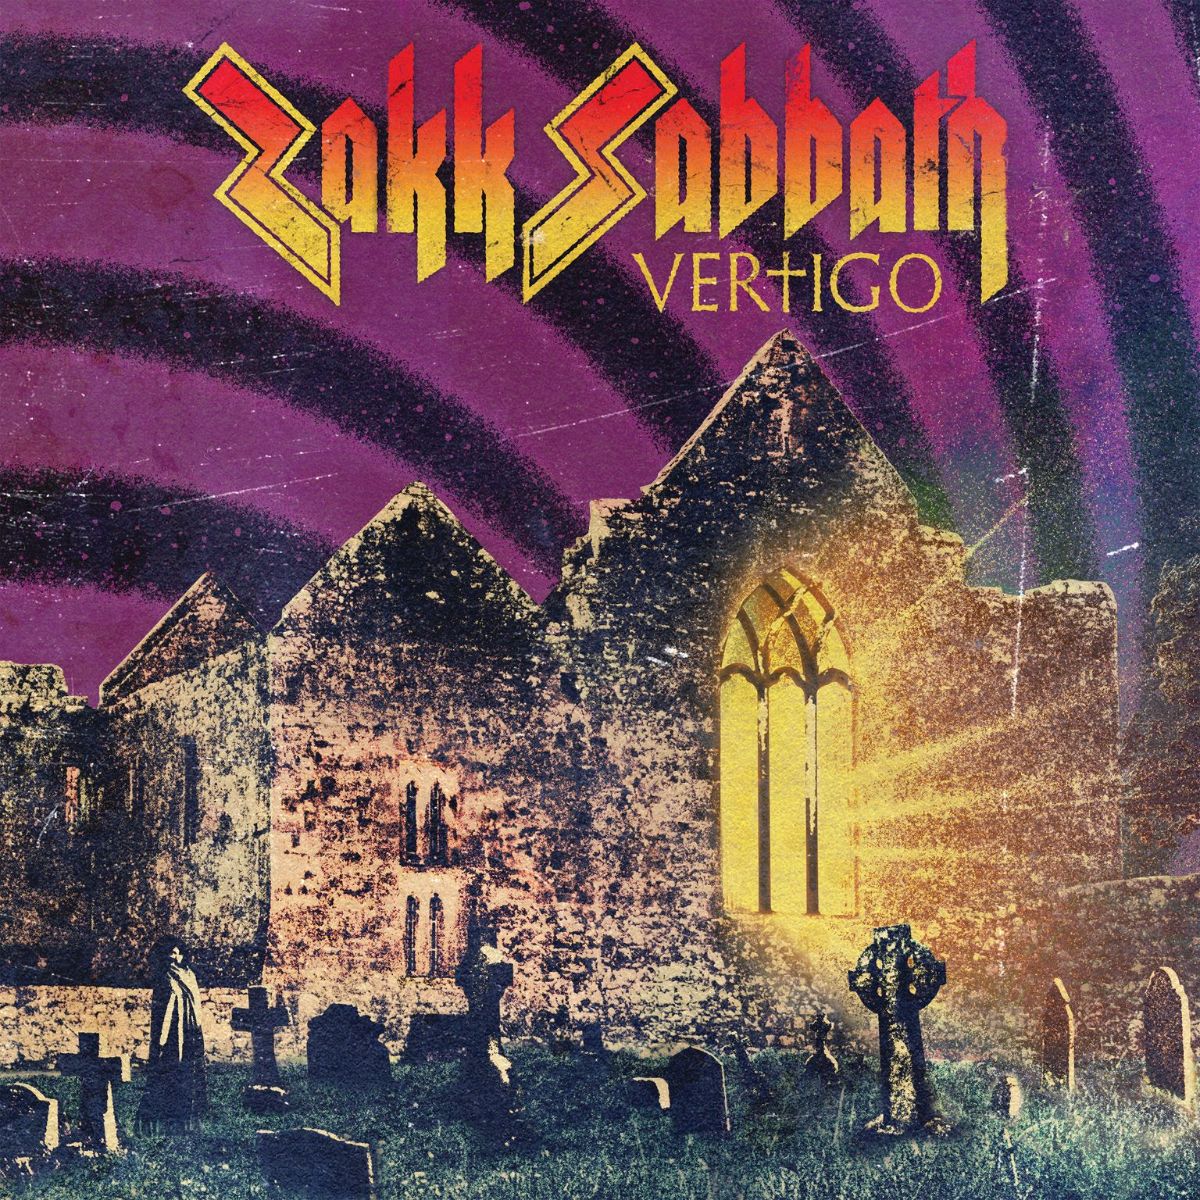 Zakk Sabbath "Vertigo" album cover